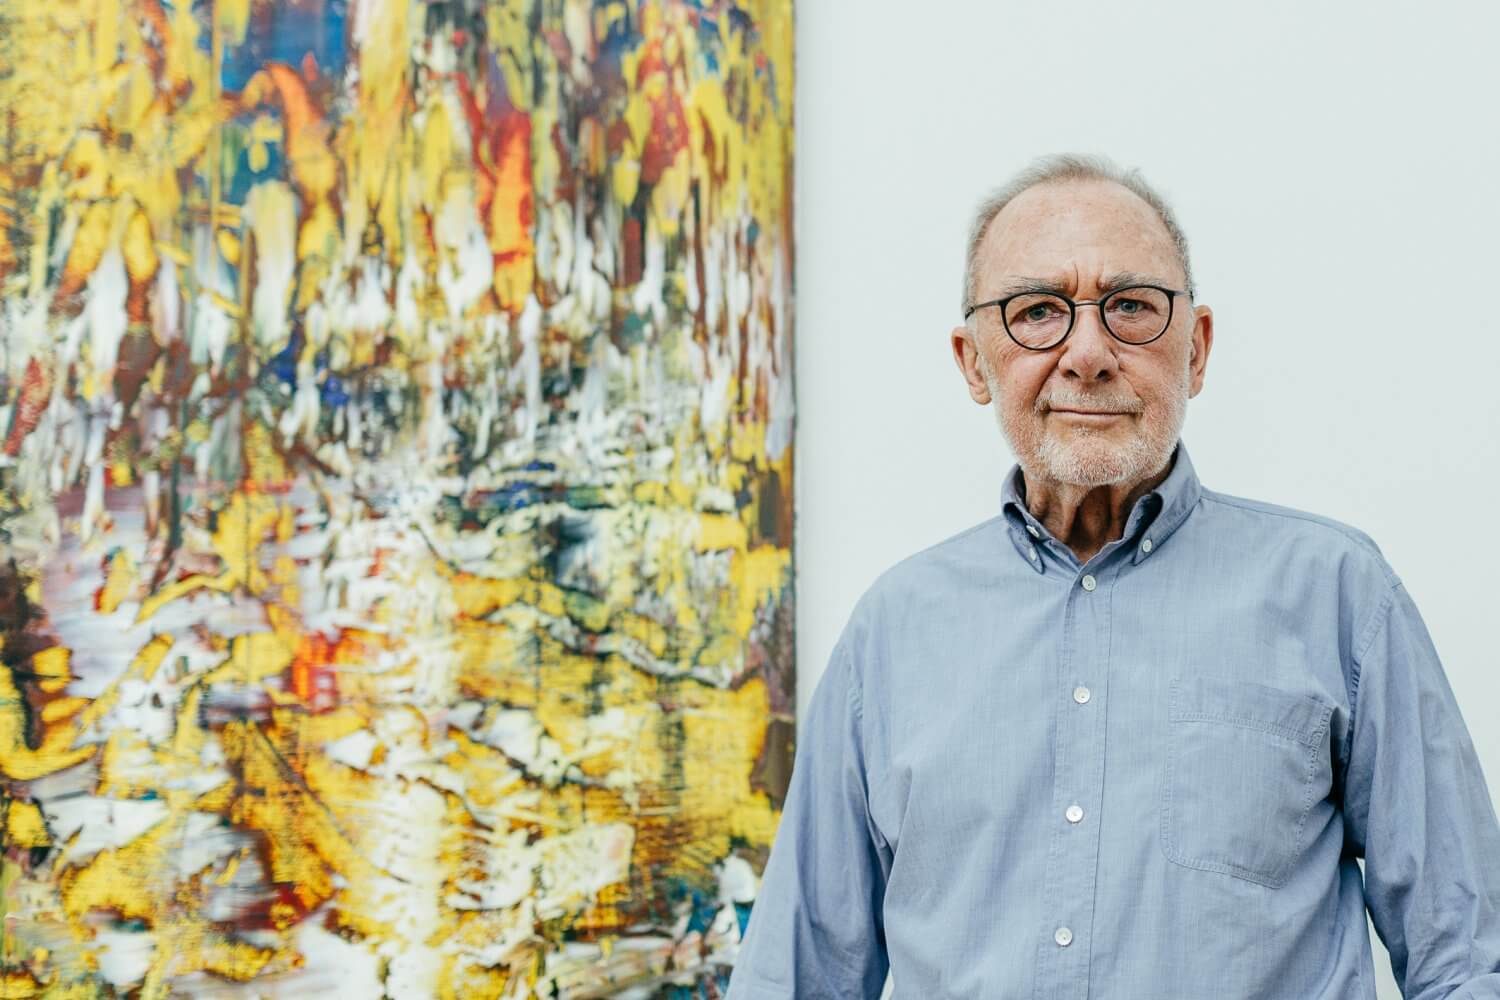 Der Künstler Gerhard Richter feiert seinen 90. Geburtstag